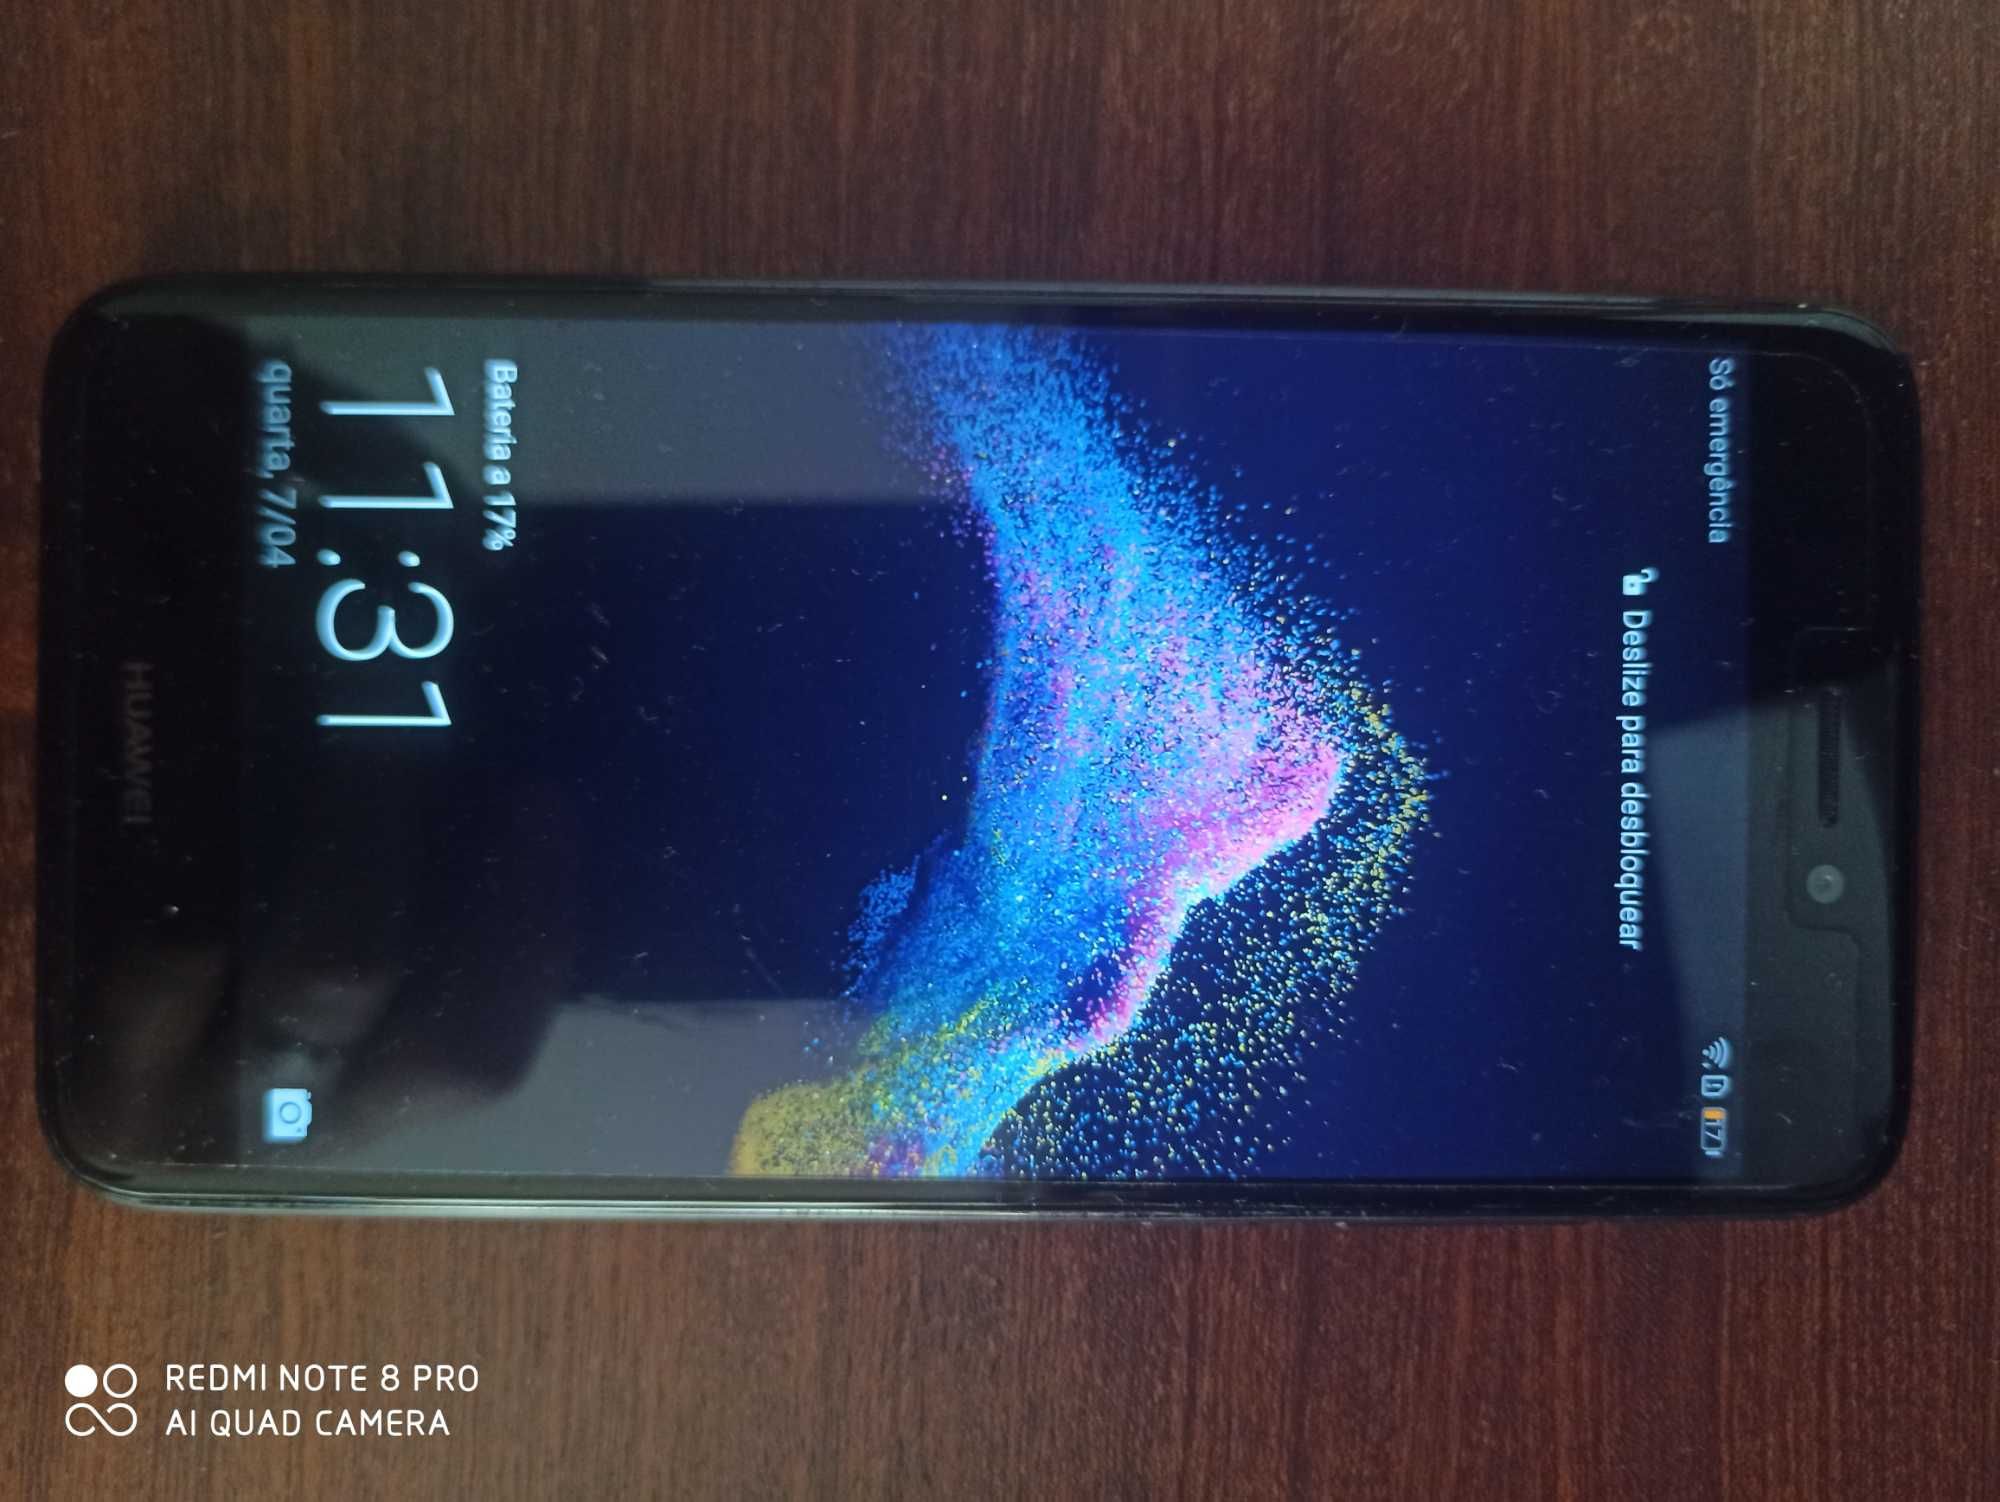 Telemóvel Huawei P8 lite 2017 em ótimo estado